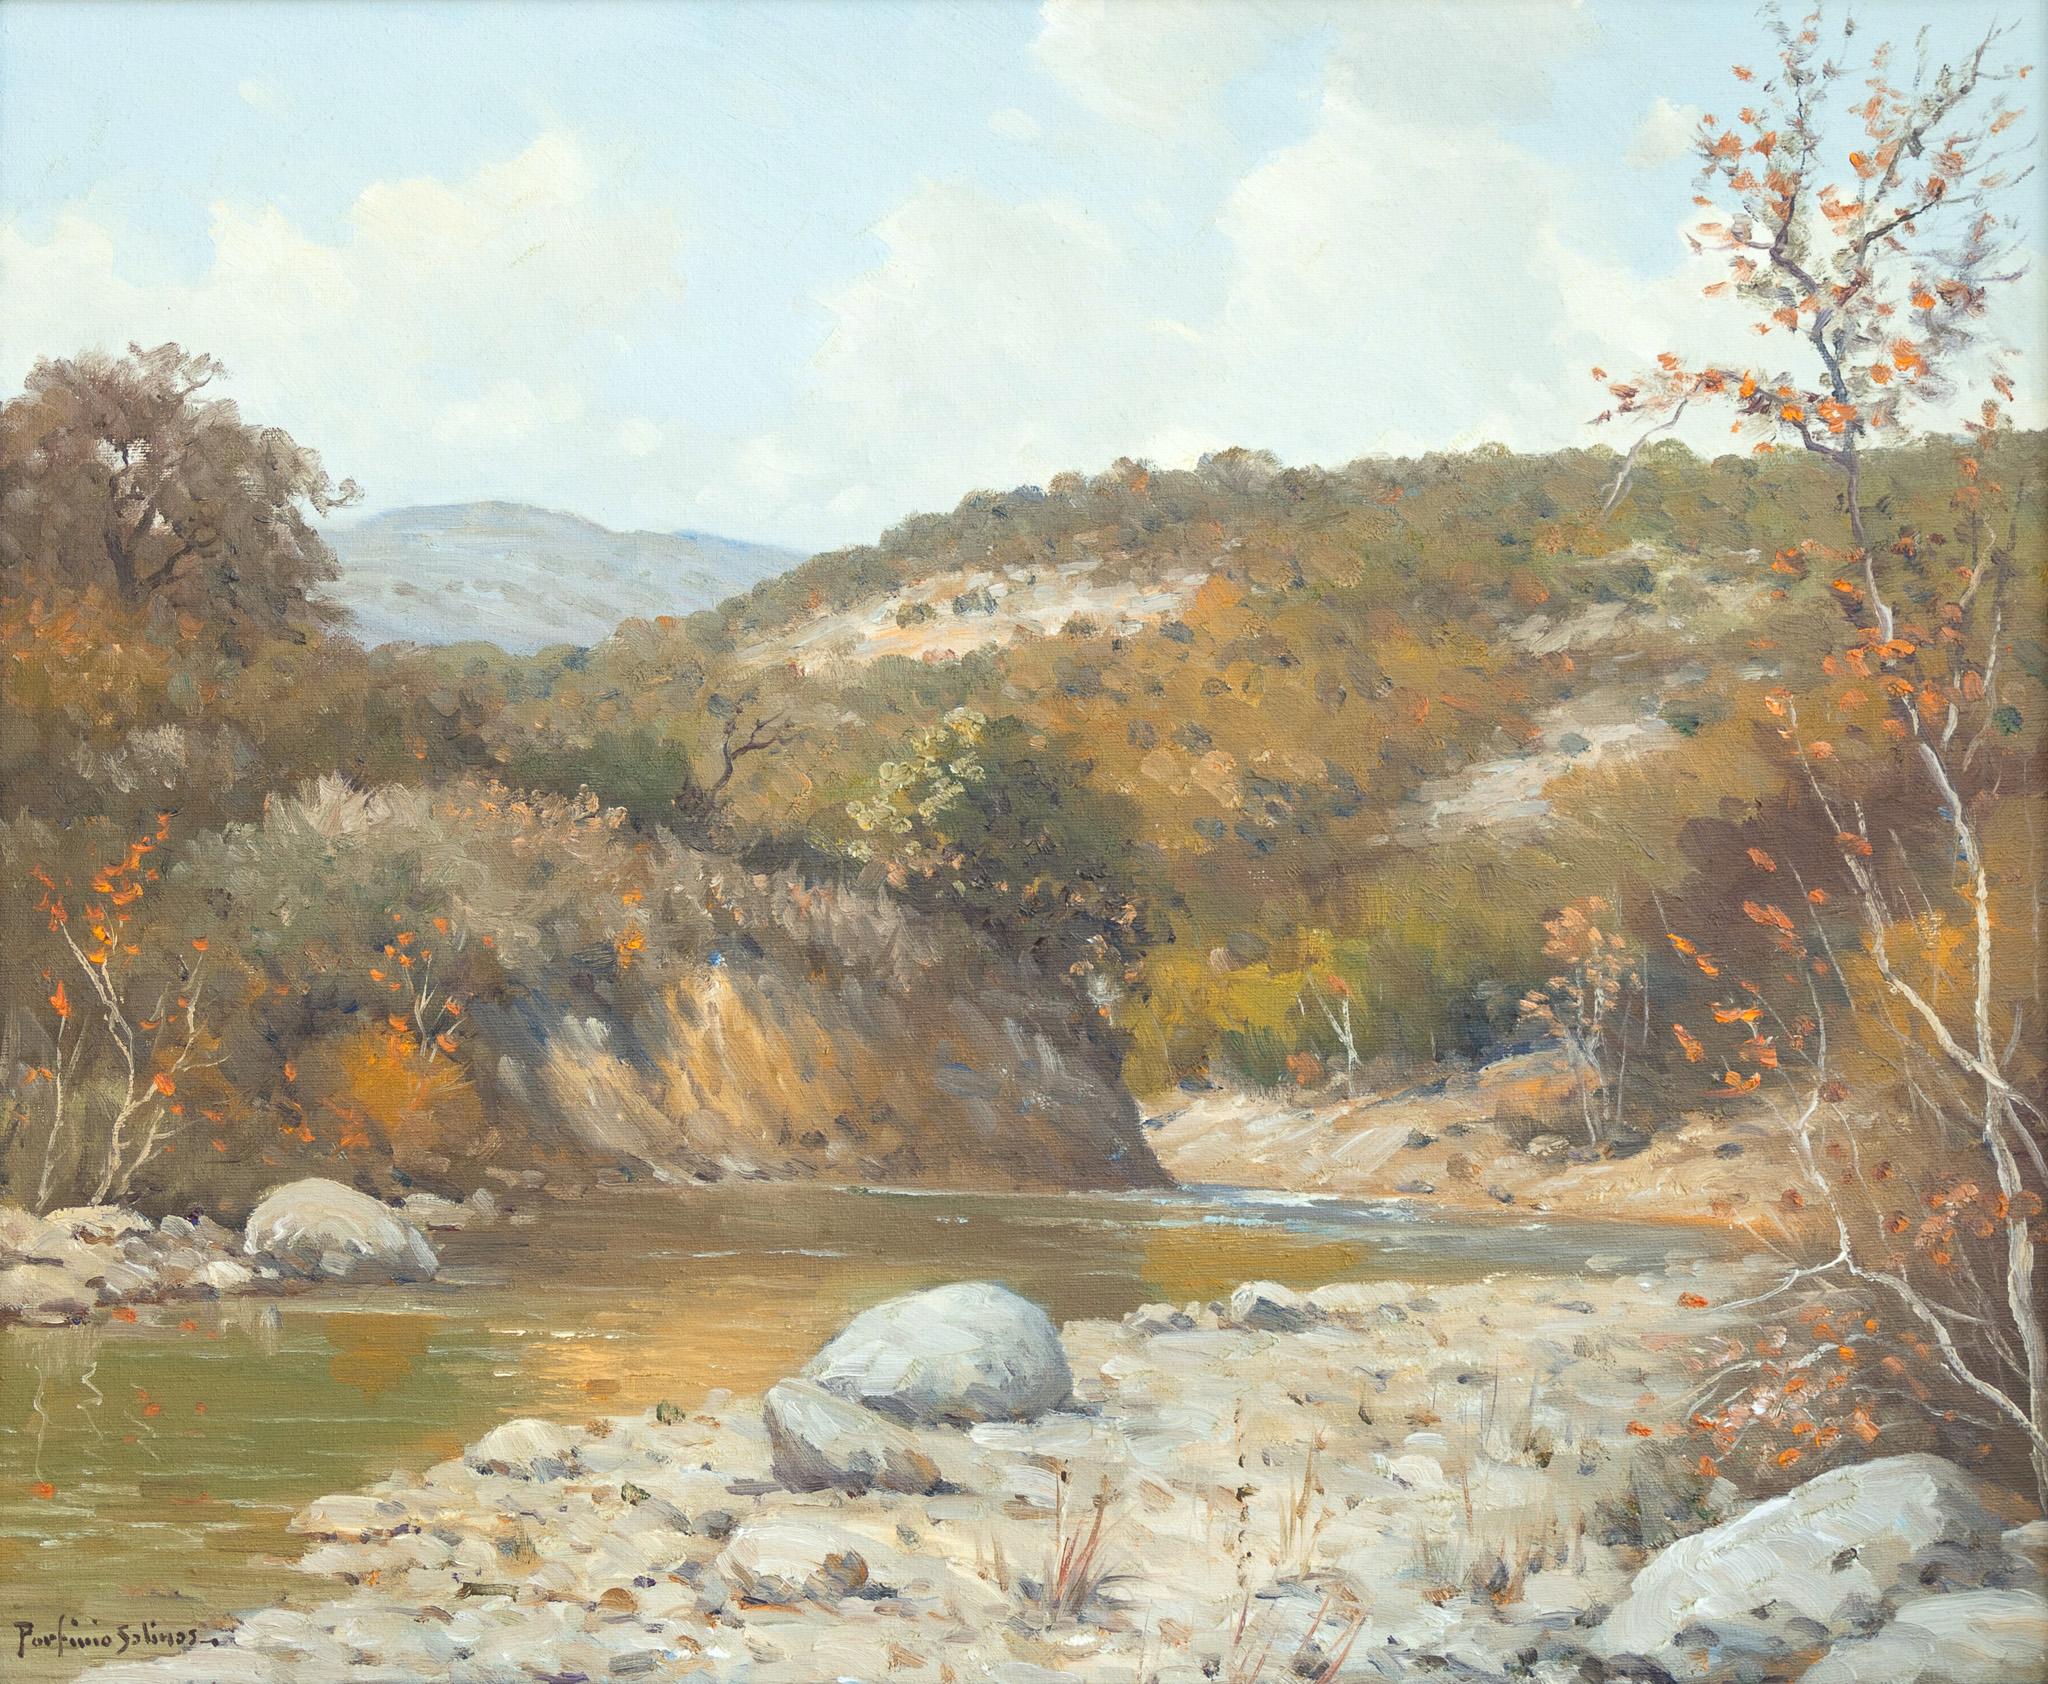 Porfirio Salinas Landscape Painting – „River-Landschaft“ Herbst Texas Hill Country-Landschaft